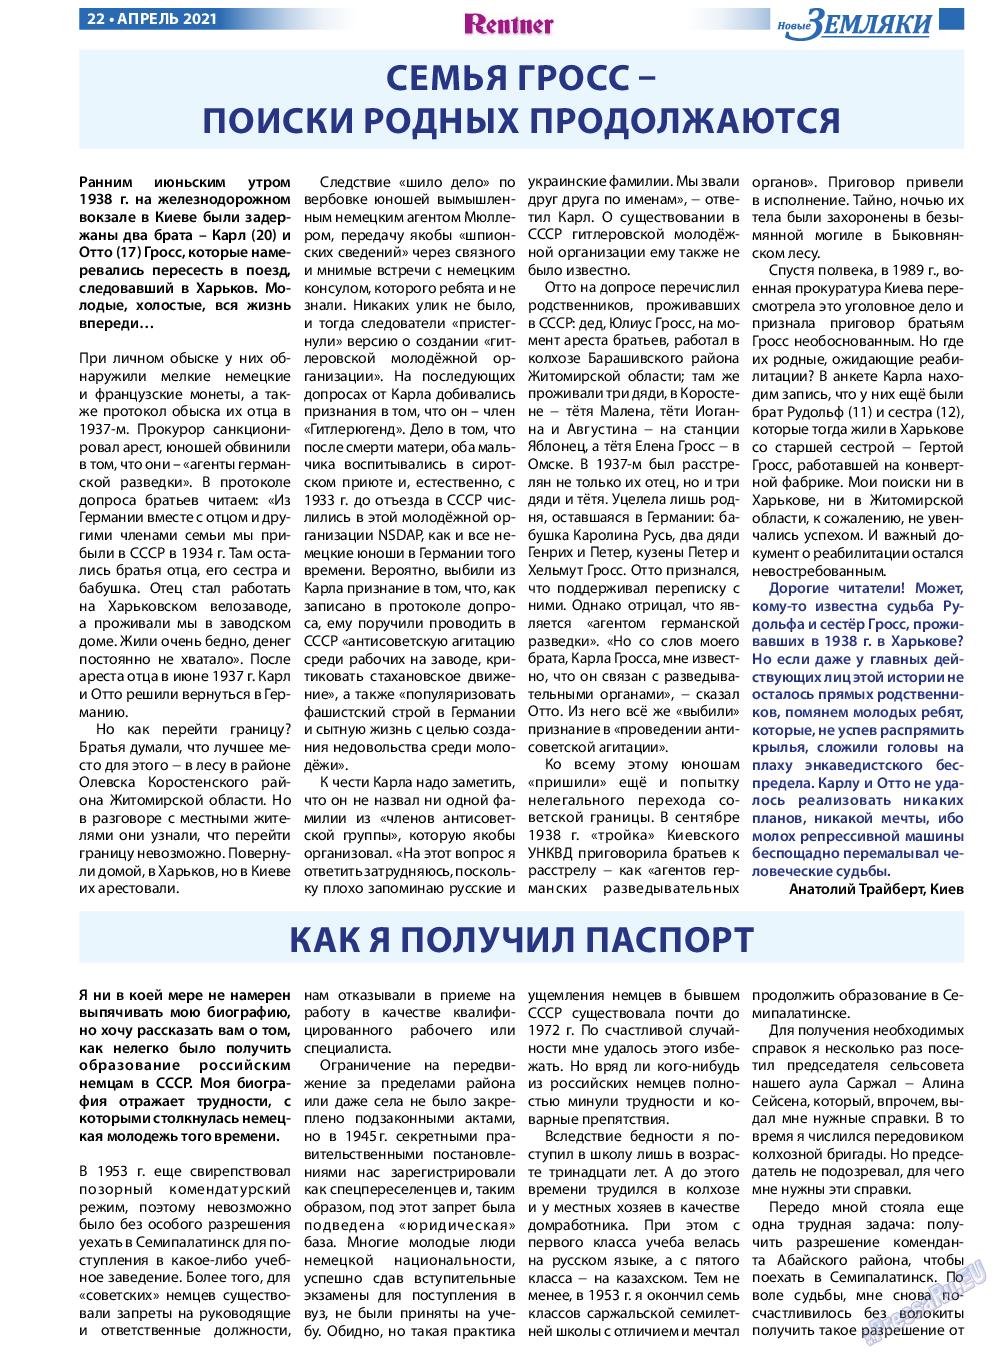 Новые Земляки, газета. 2021 №4 стр.22